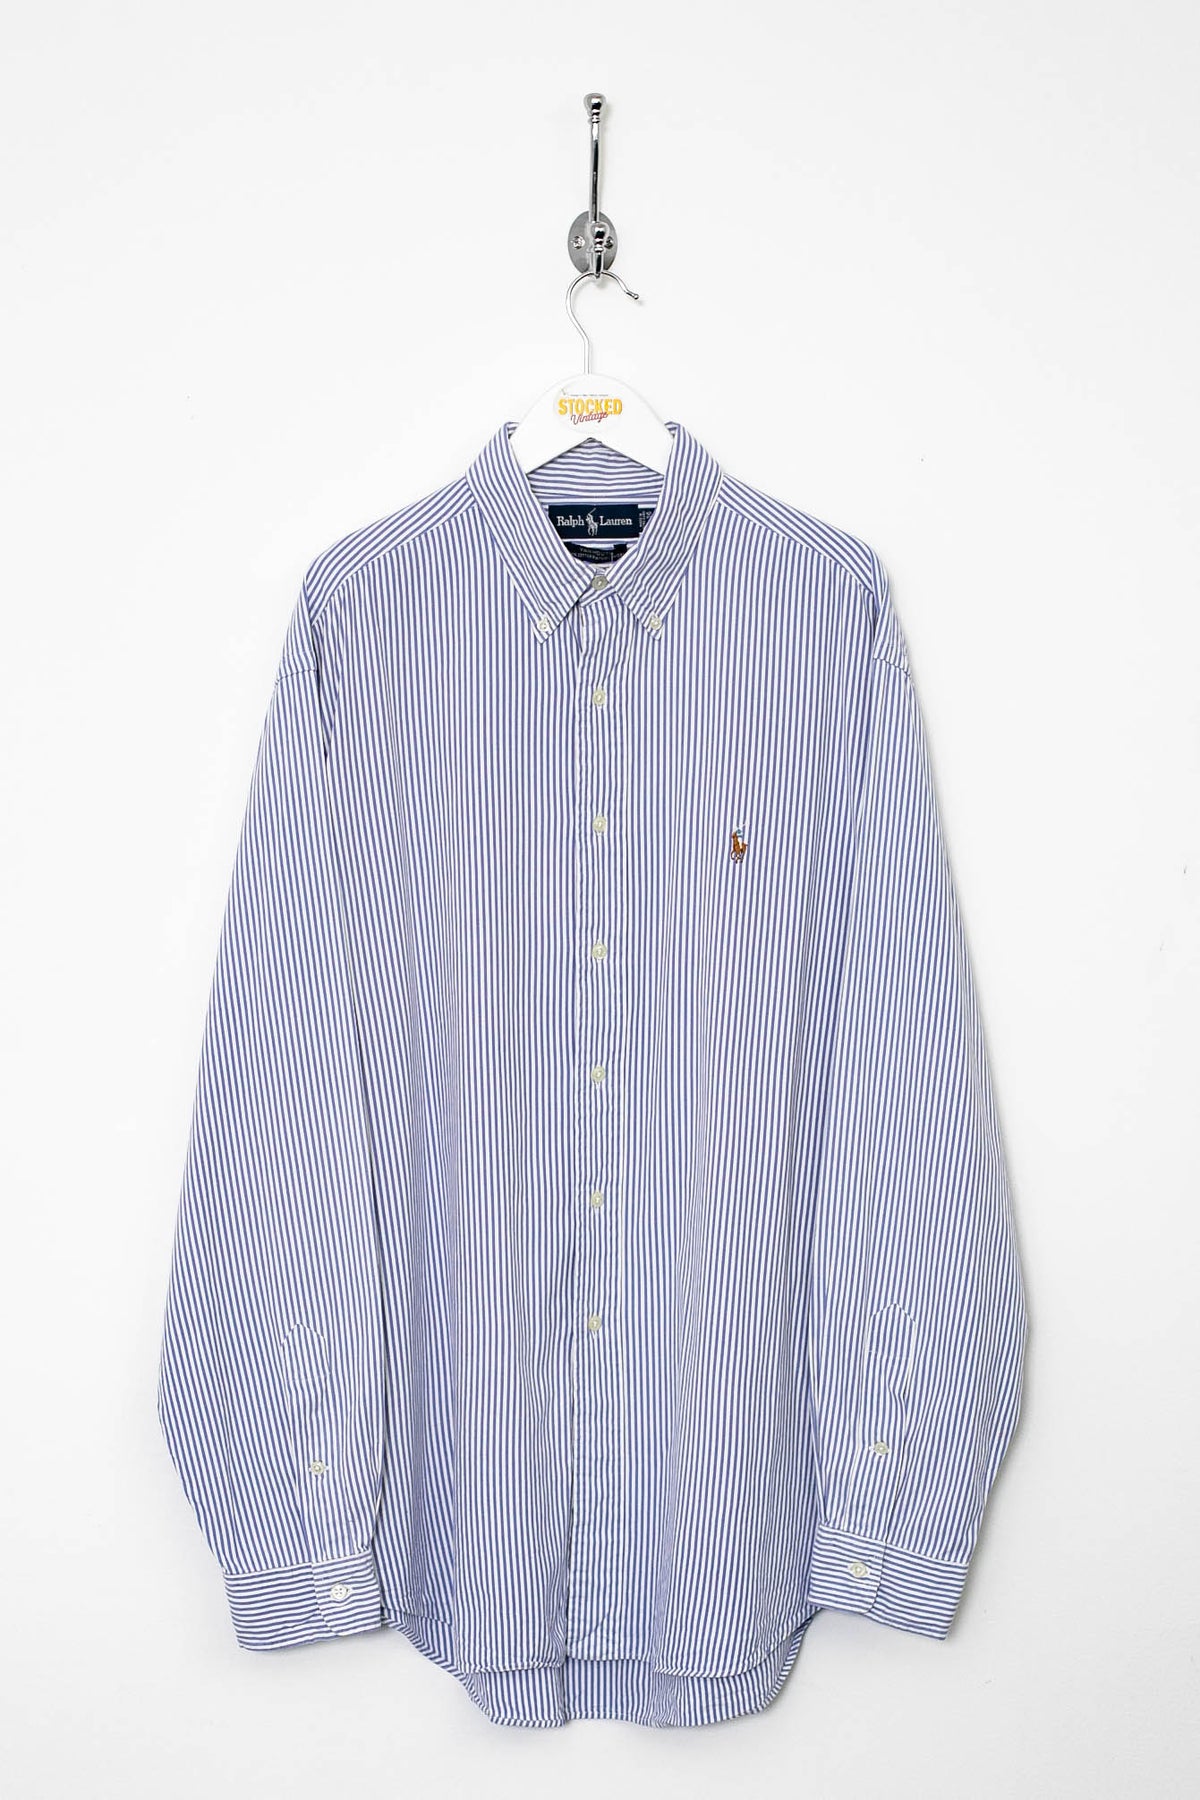 Ralph Lauren Shirt (XL)